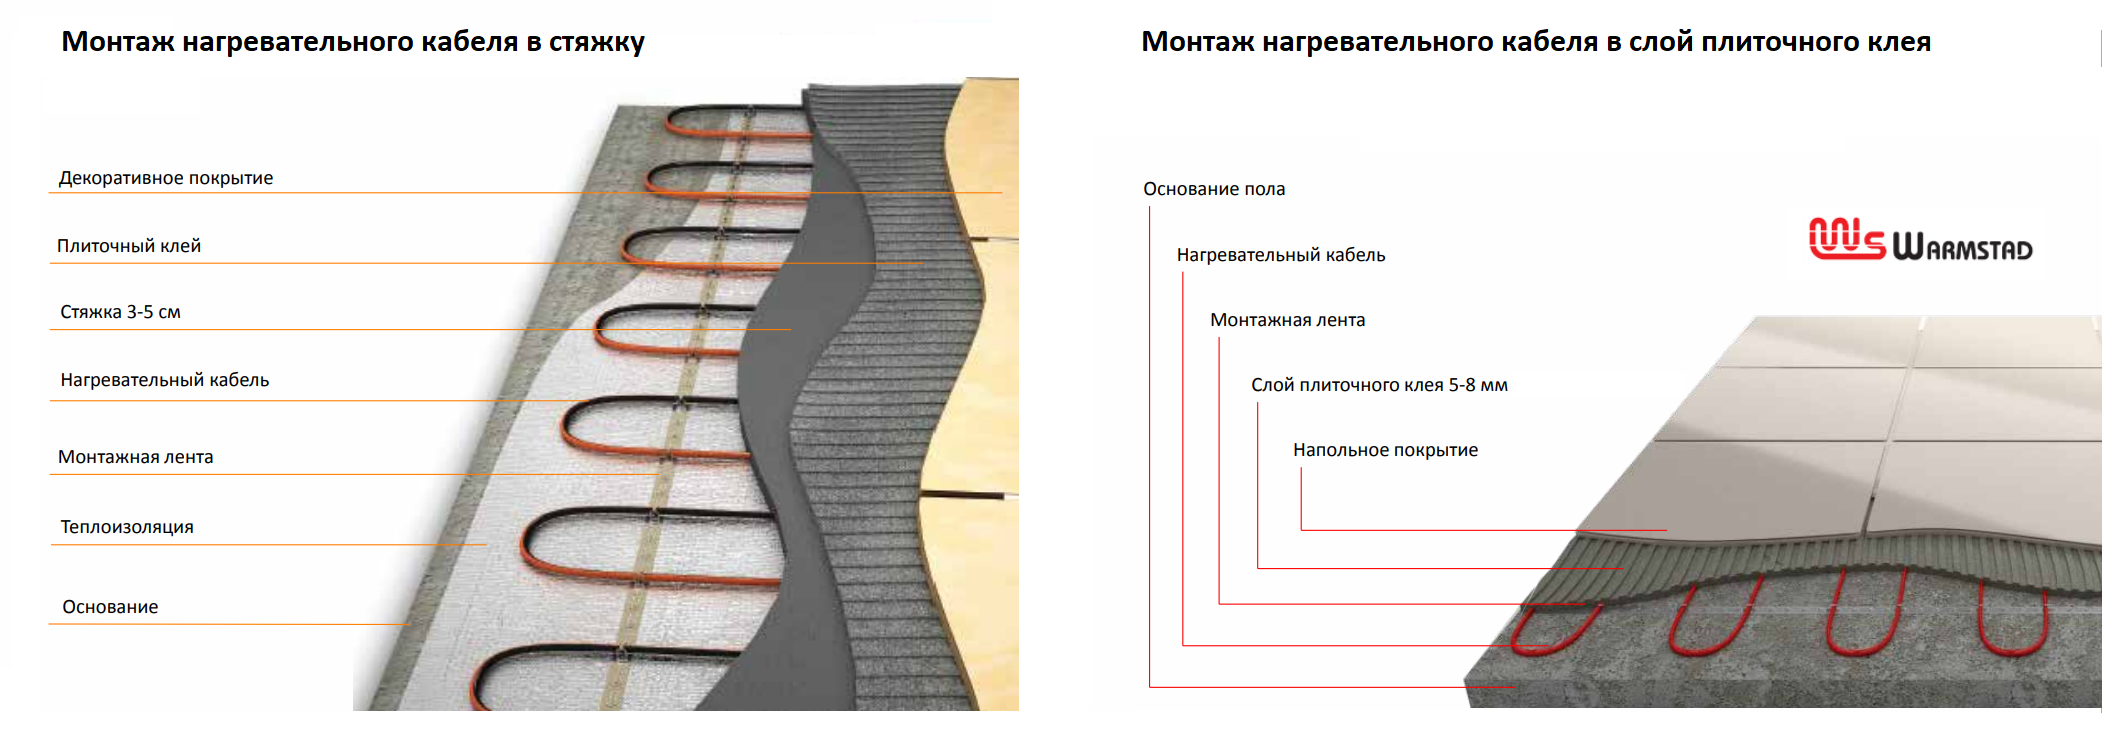 Теплый пол на балкон под плитку: плюсы и минусы, особенности монтажа. электрический теплый пол на балконе под плитку - все о строительстве